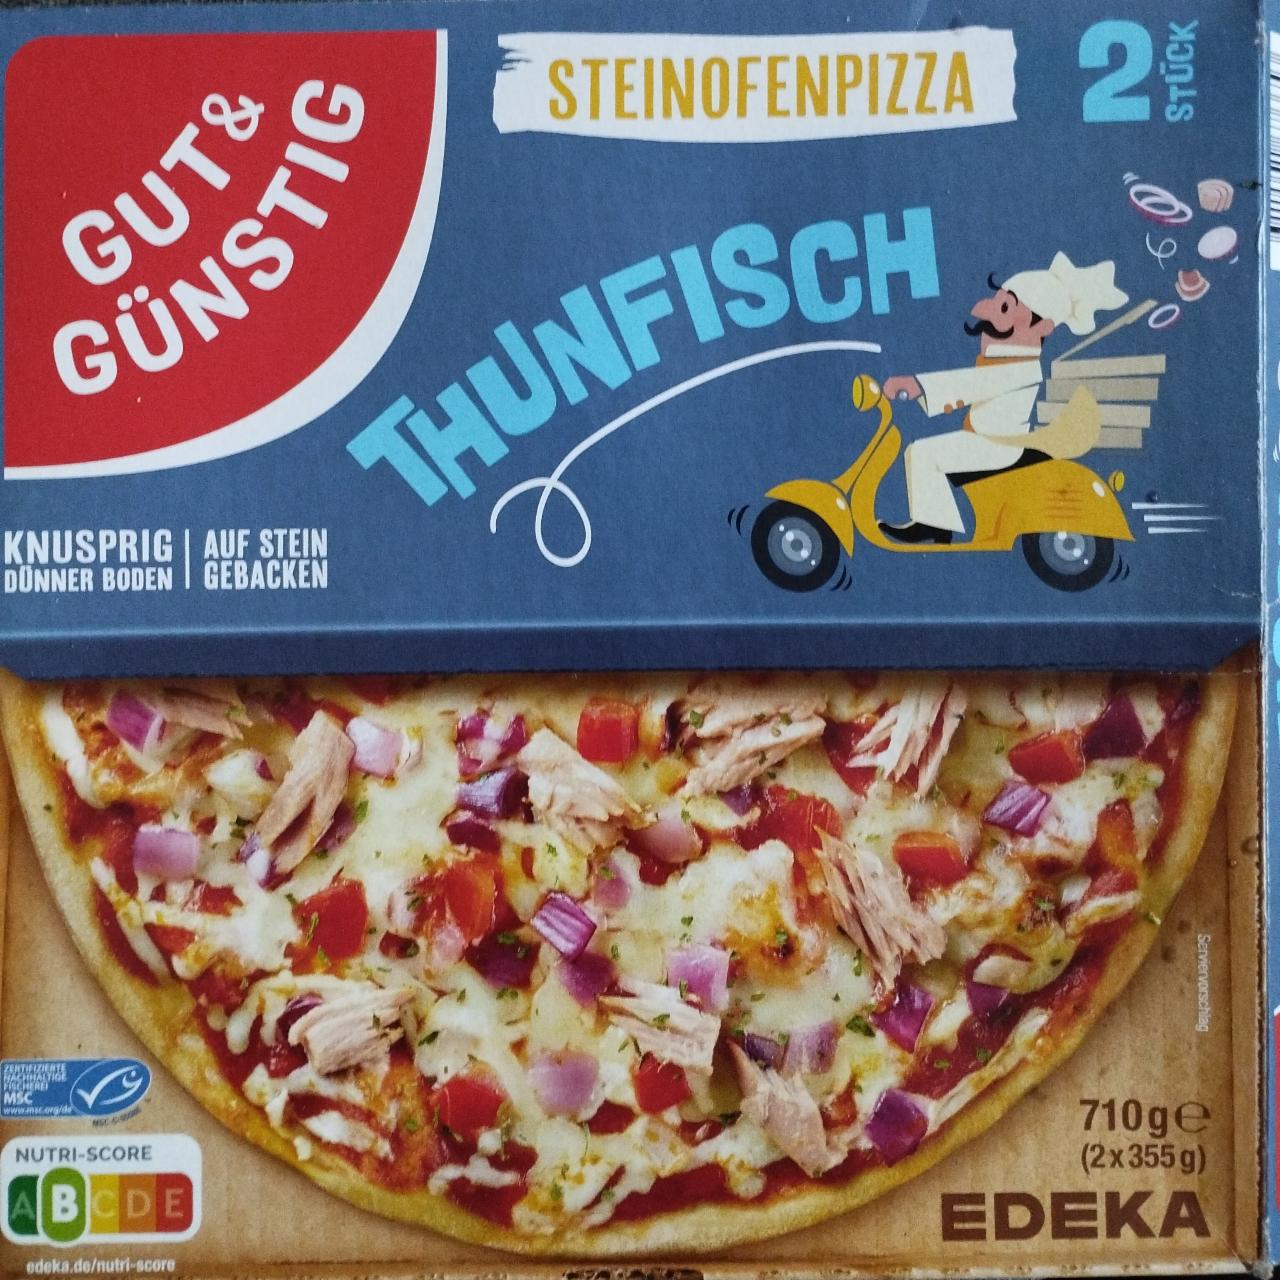 Fotografie - Steinofenpizza Thunfisch Gut&Günstig